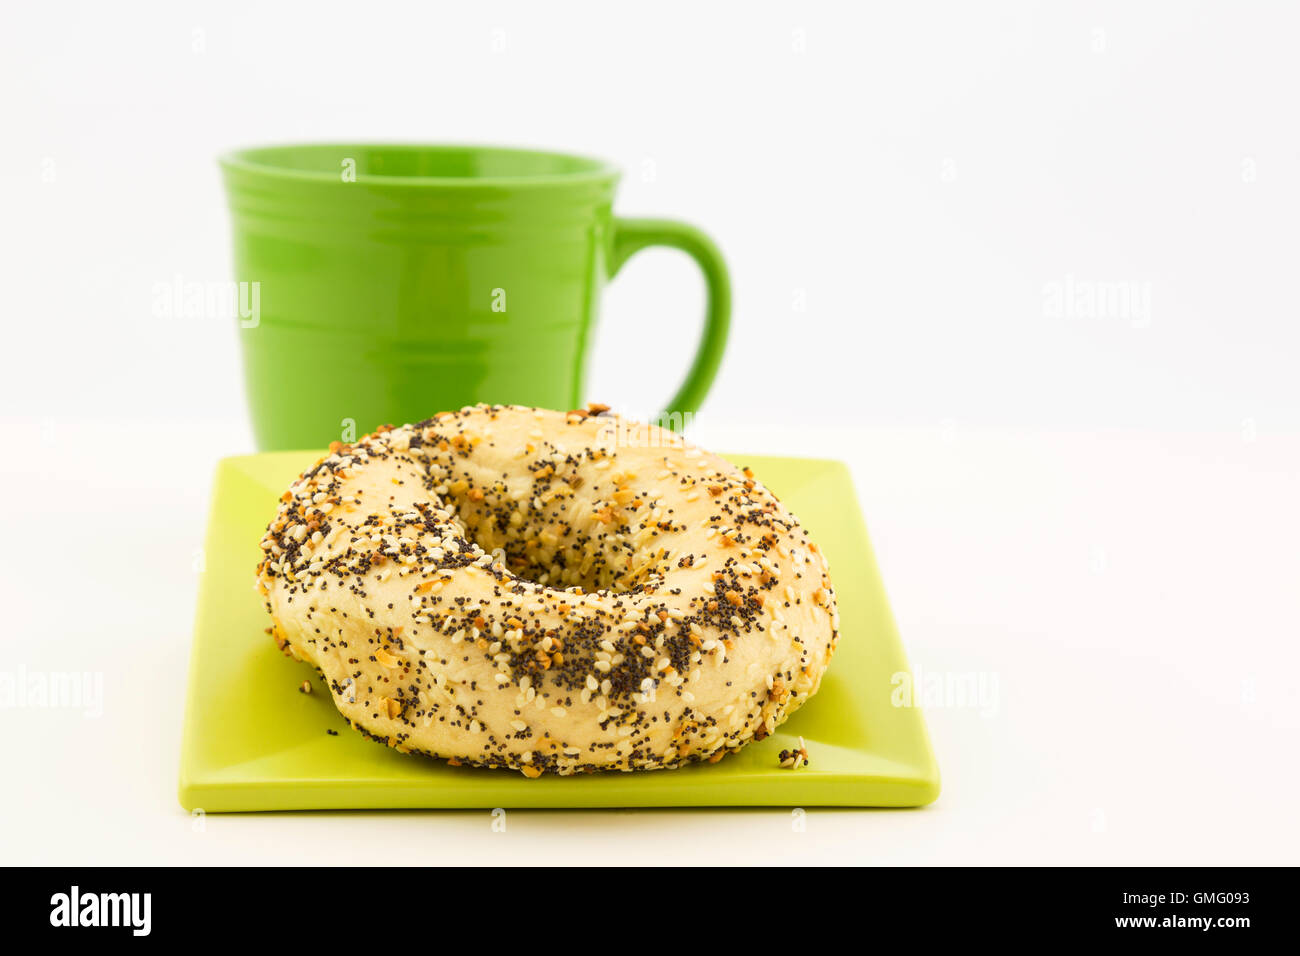 Presentación de café y panecillos con ajo, sésamo y semillas de adormidera como topping y taza verde adyacentes. Foto de stock